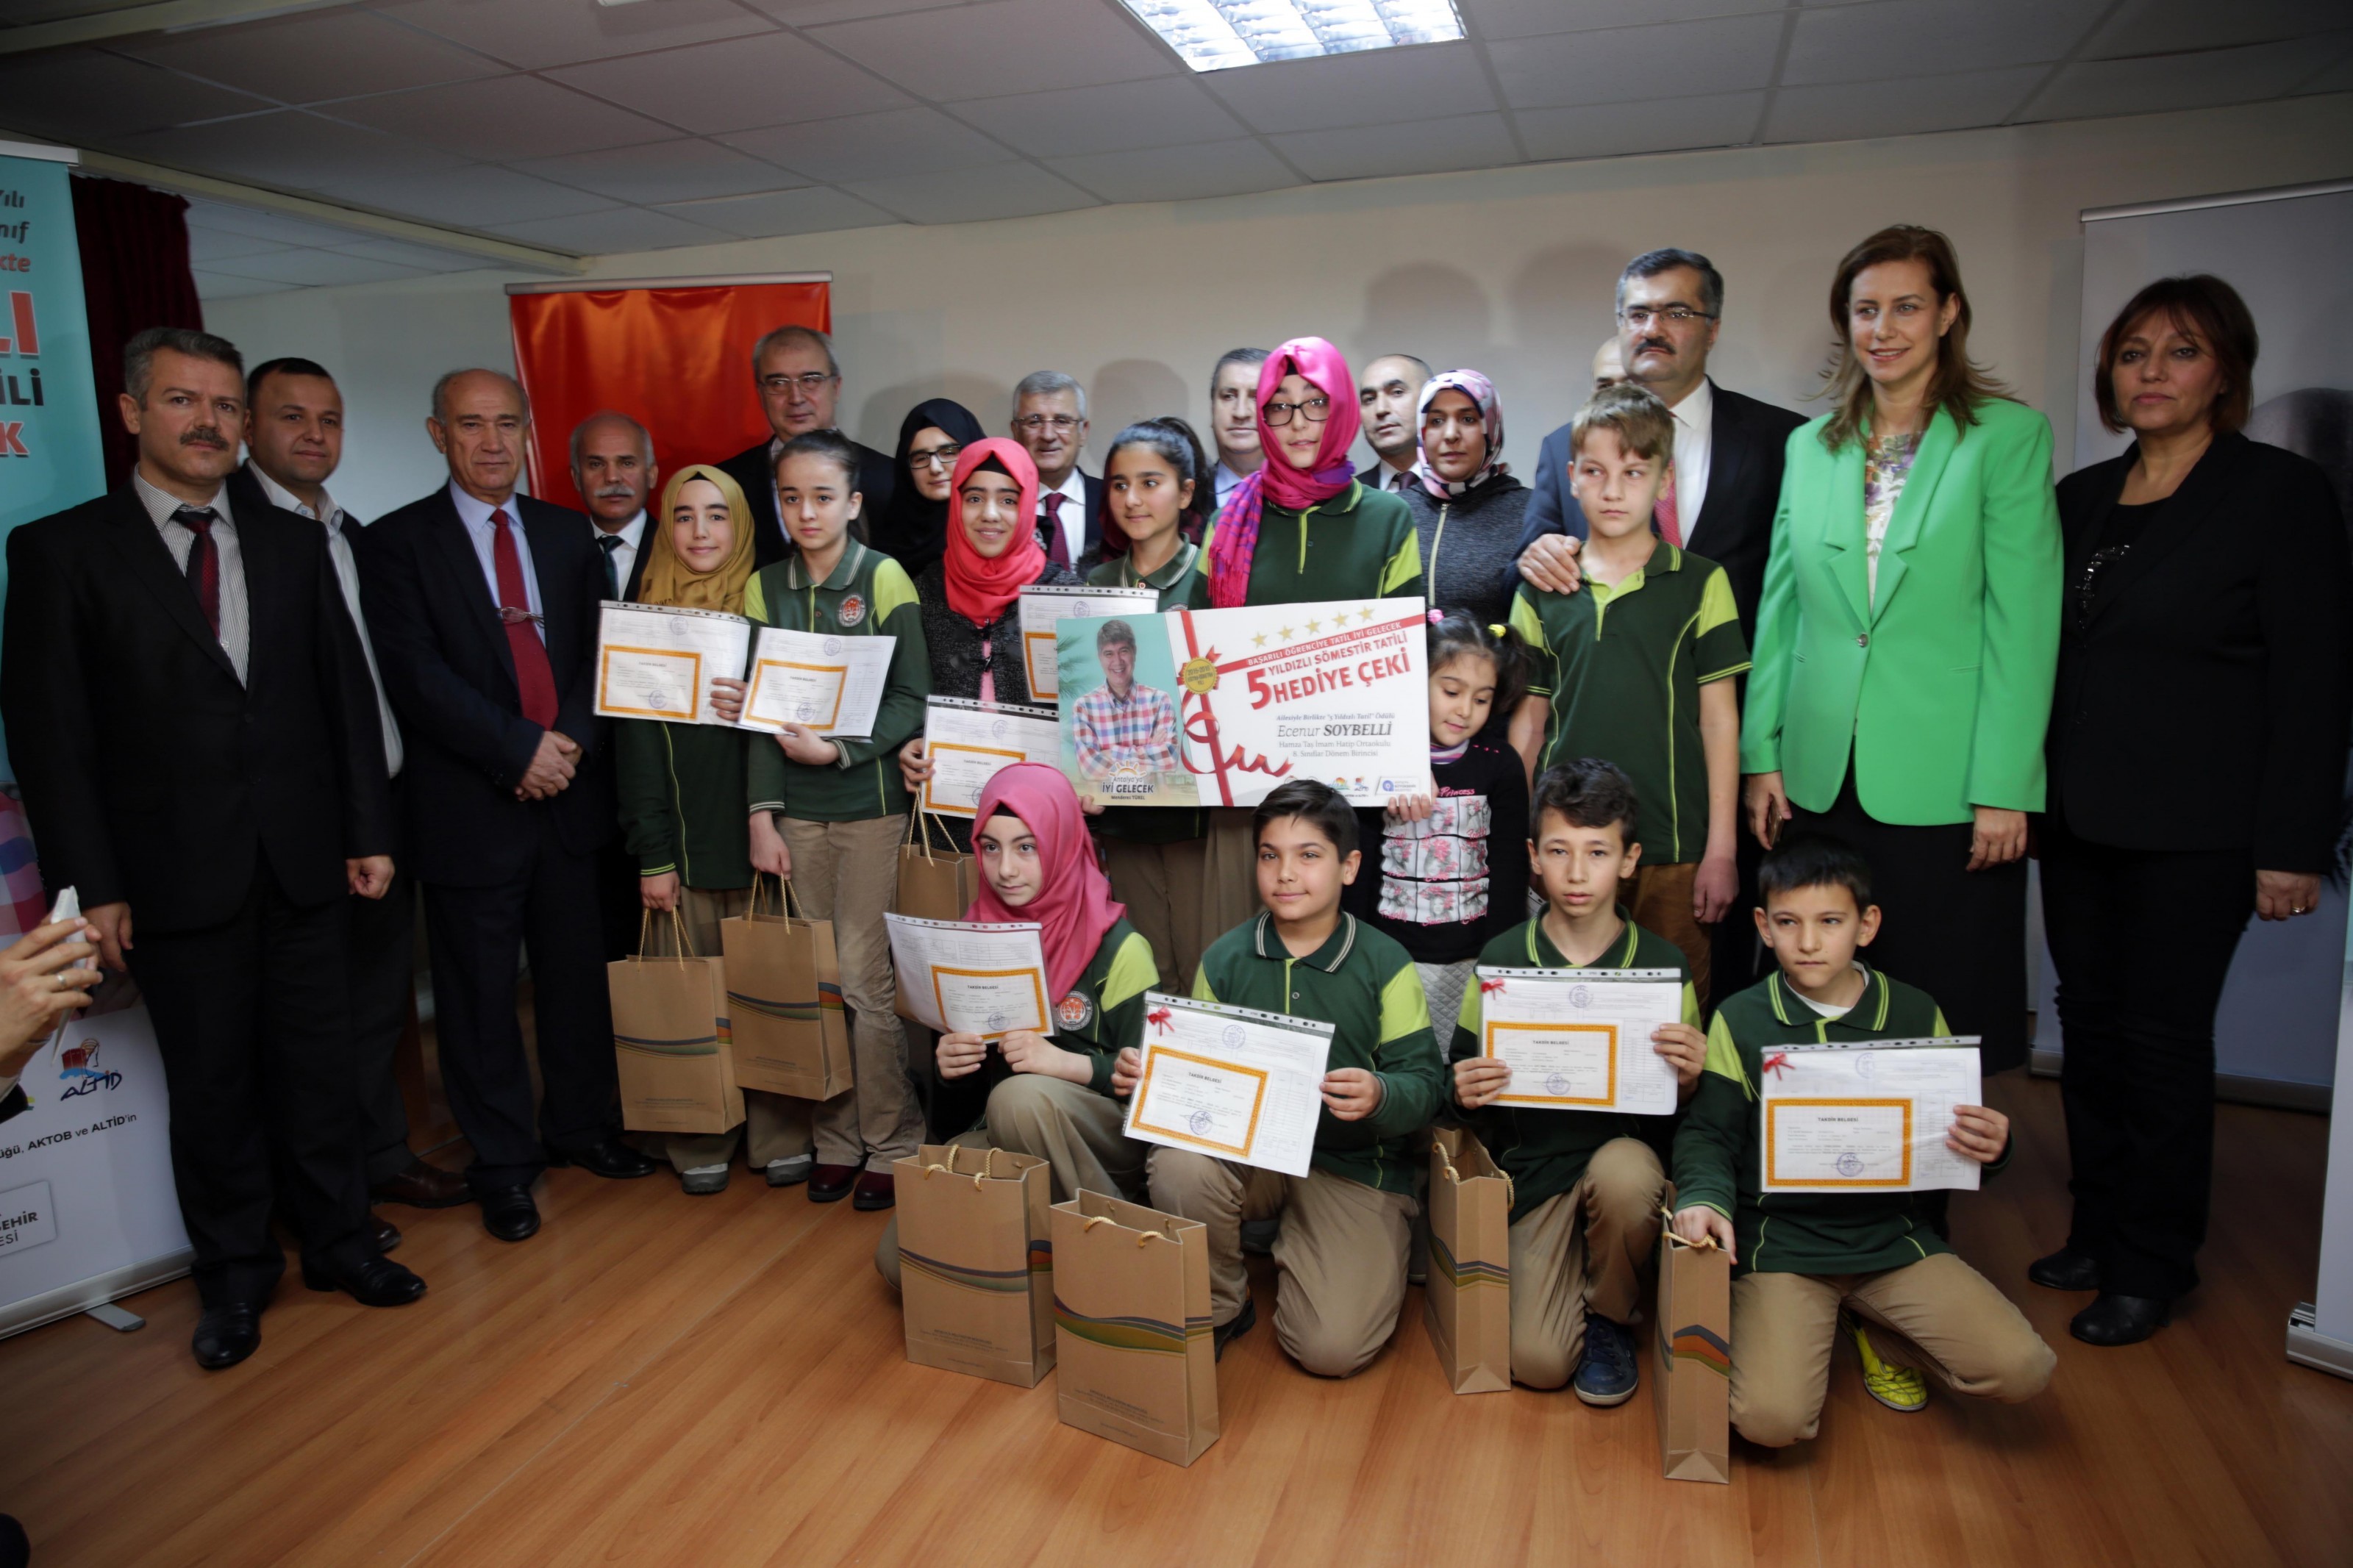 Antalya Büyükşehir Belediyesi Okul Birincilerini Aileleri ile Tatile Gönderdi